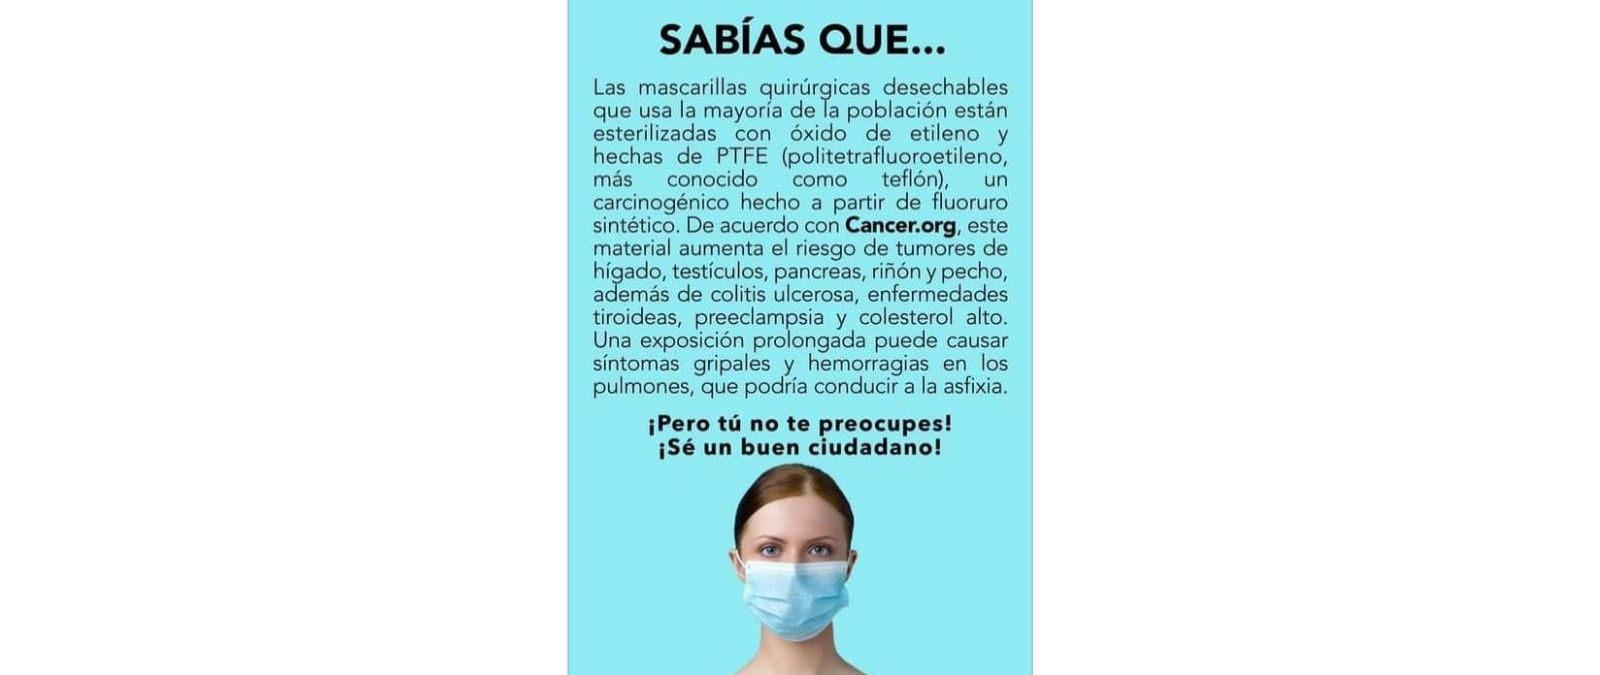 Las afirmaciones falsas de la imagen viral que dice que las mascarillas quirúrgicas usan productos como el teflón que provocan cáncer